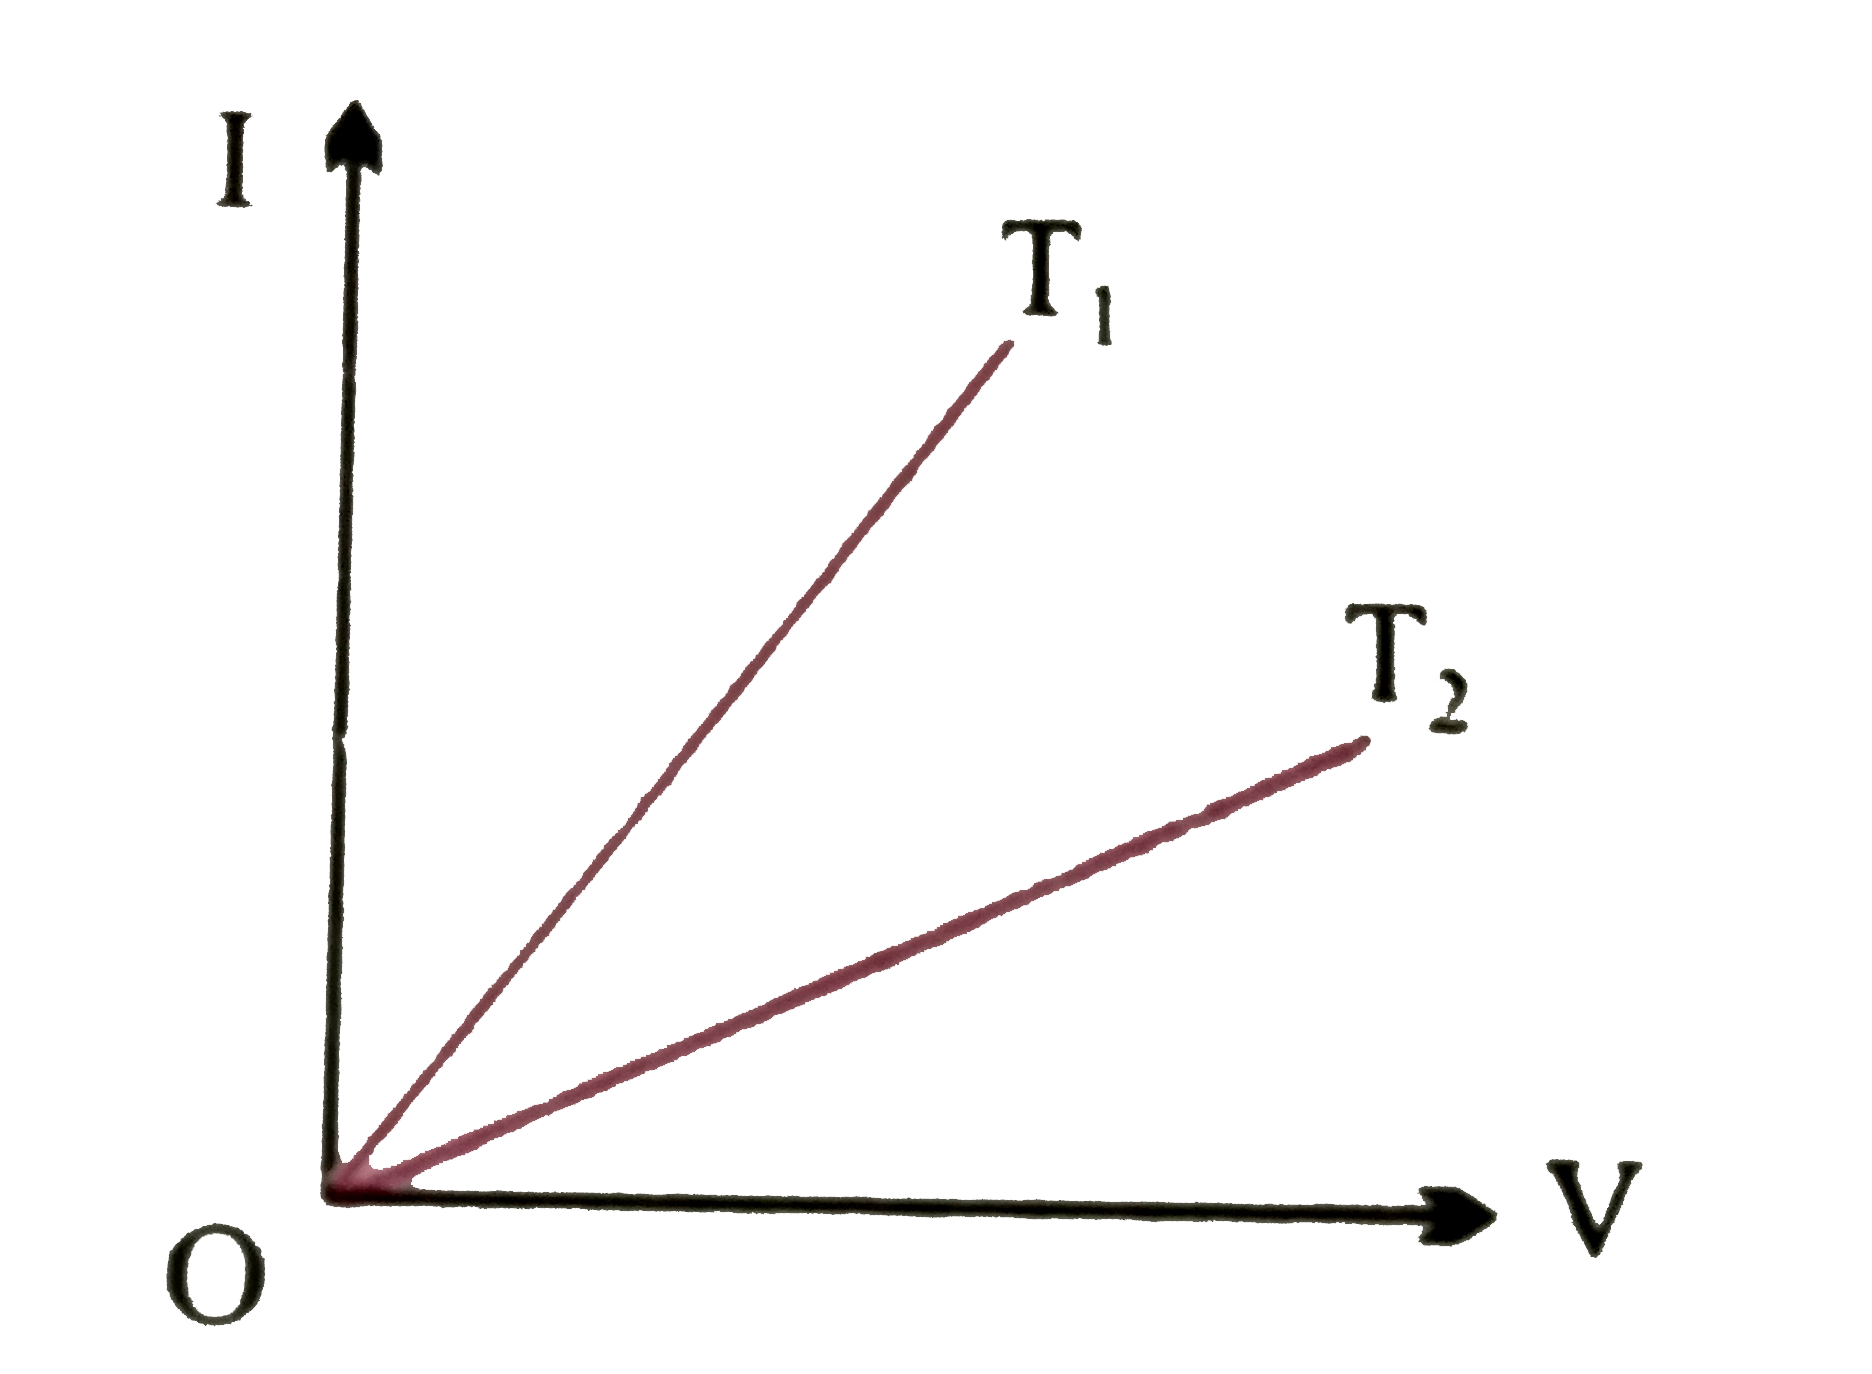 दो विभिन्न  तापो T(1) वाT(2)  पर धात्विक तार  का V-I ग्राफ  निम्न होगा  -     इनमे से किसका ताप अधिक और क्यों ?